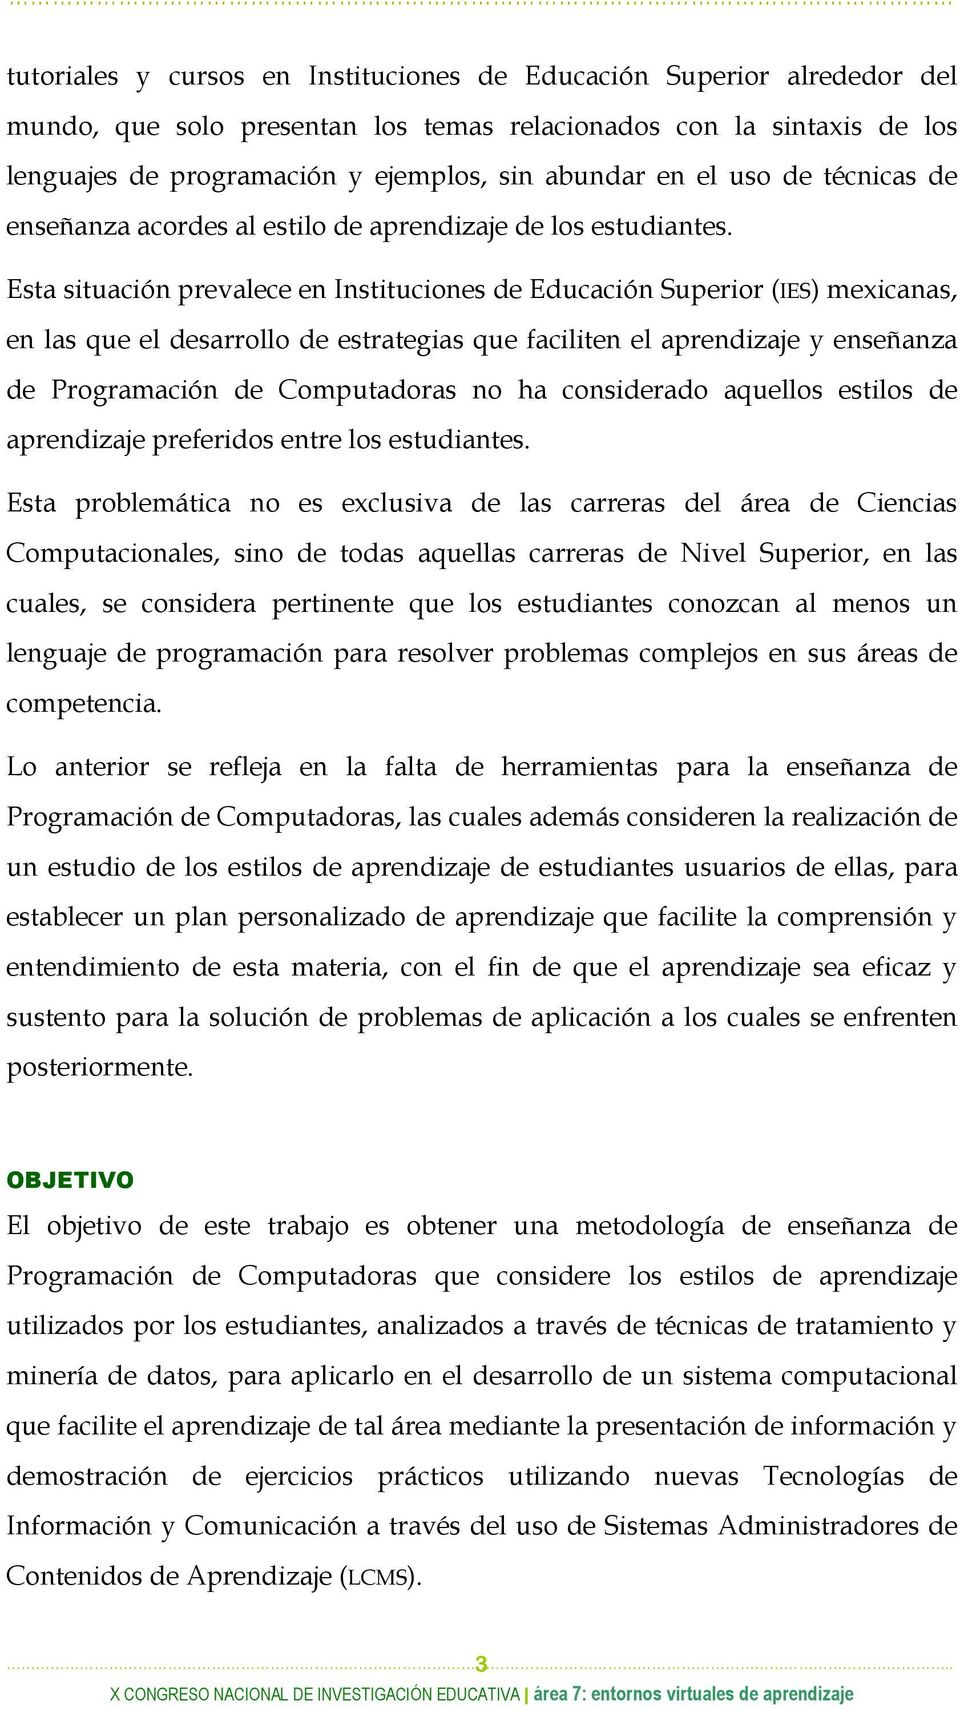 Esta situación prevalece en Instituciones de Educación Superior (IES) mexicanas, en las que el desarrollo de estrategias que faciliten el aprendizaje y enseñanza de Programación de Computadoras no ha